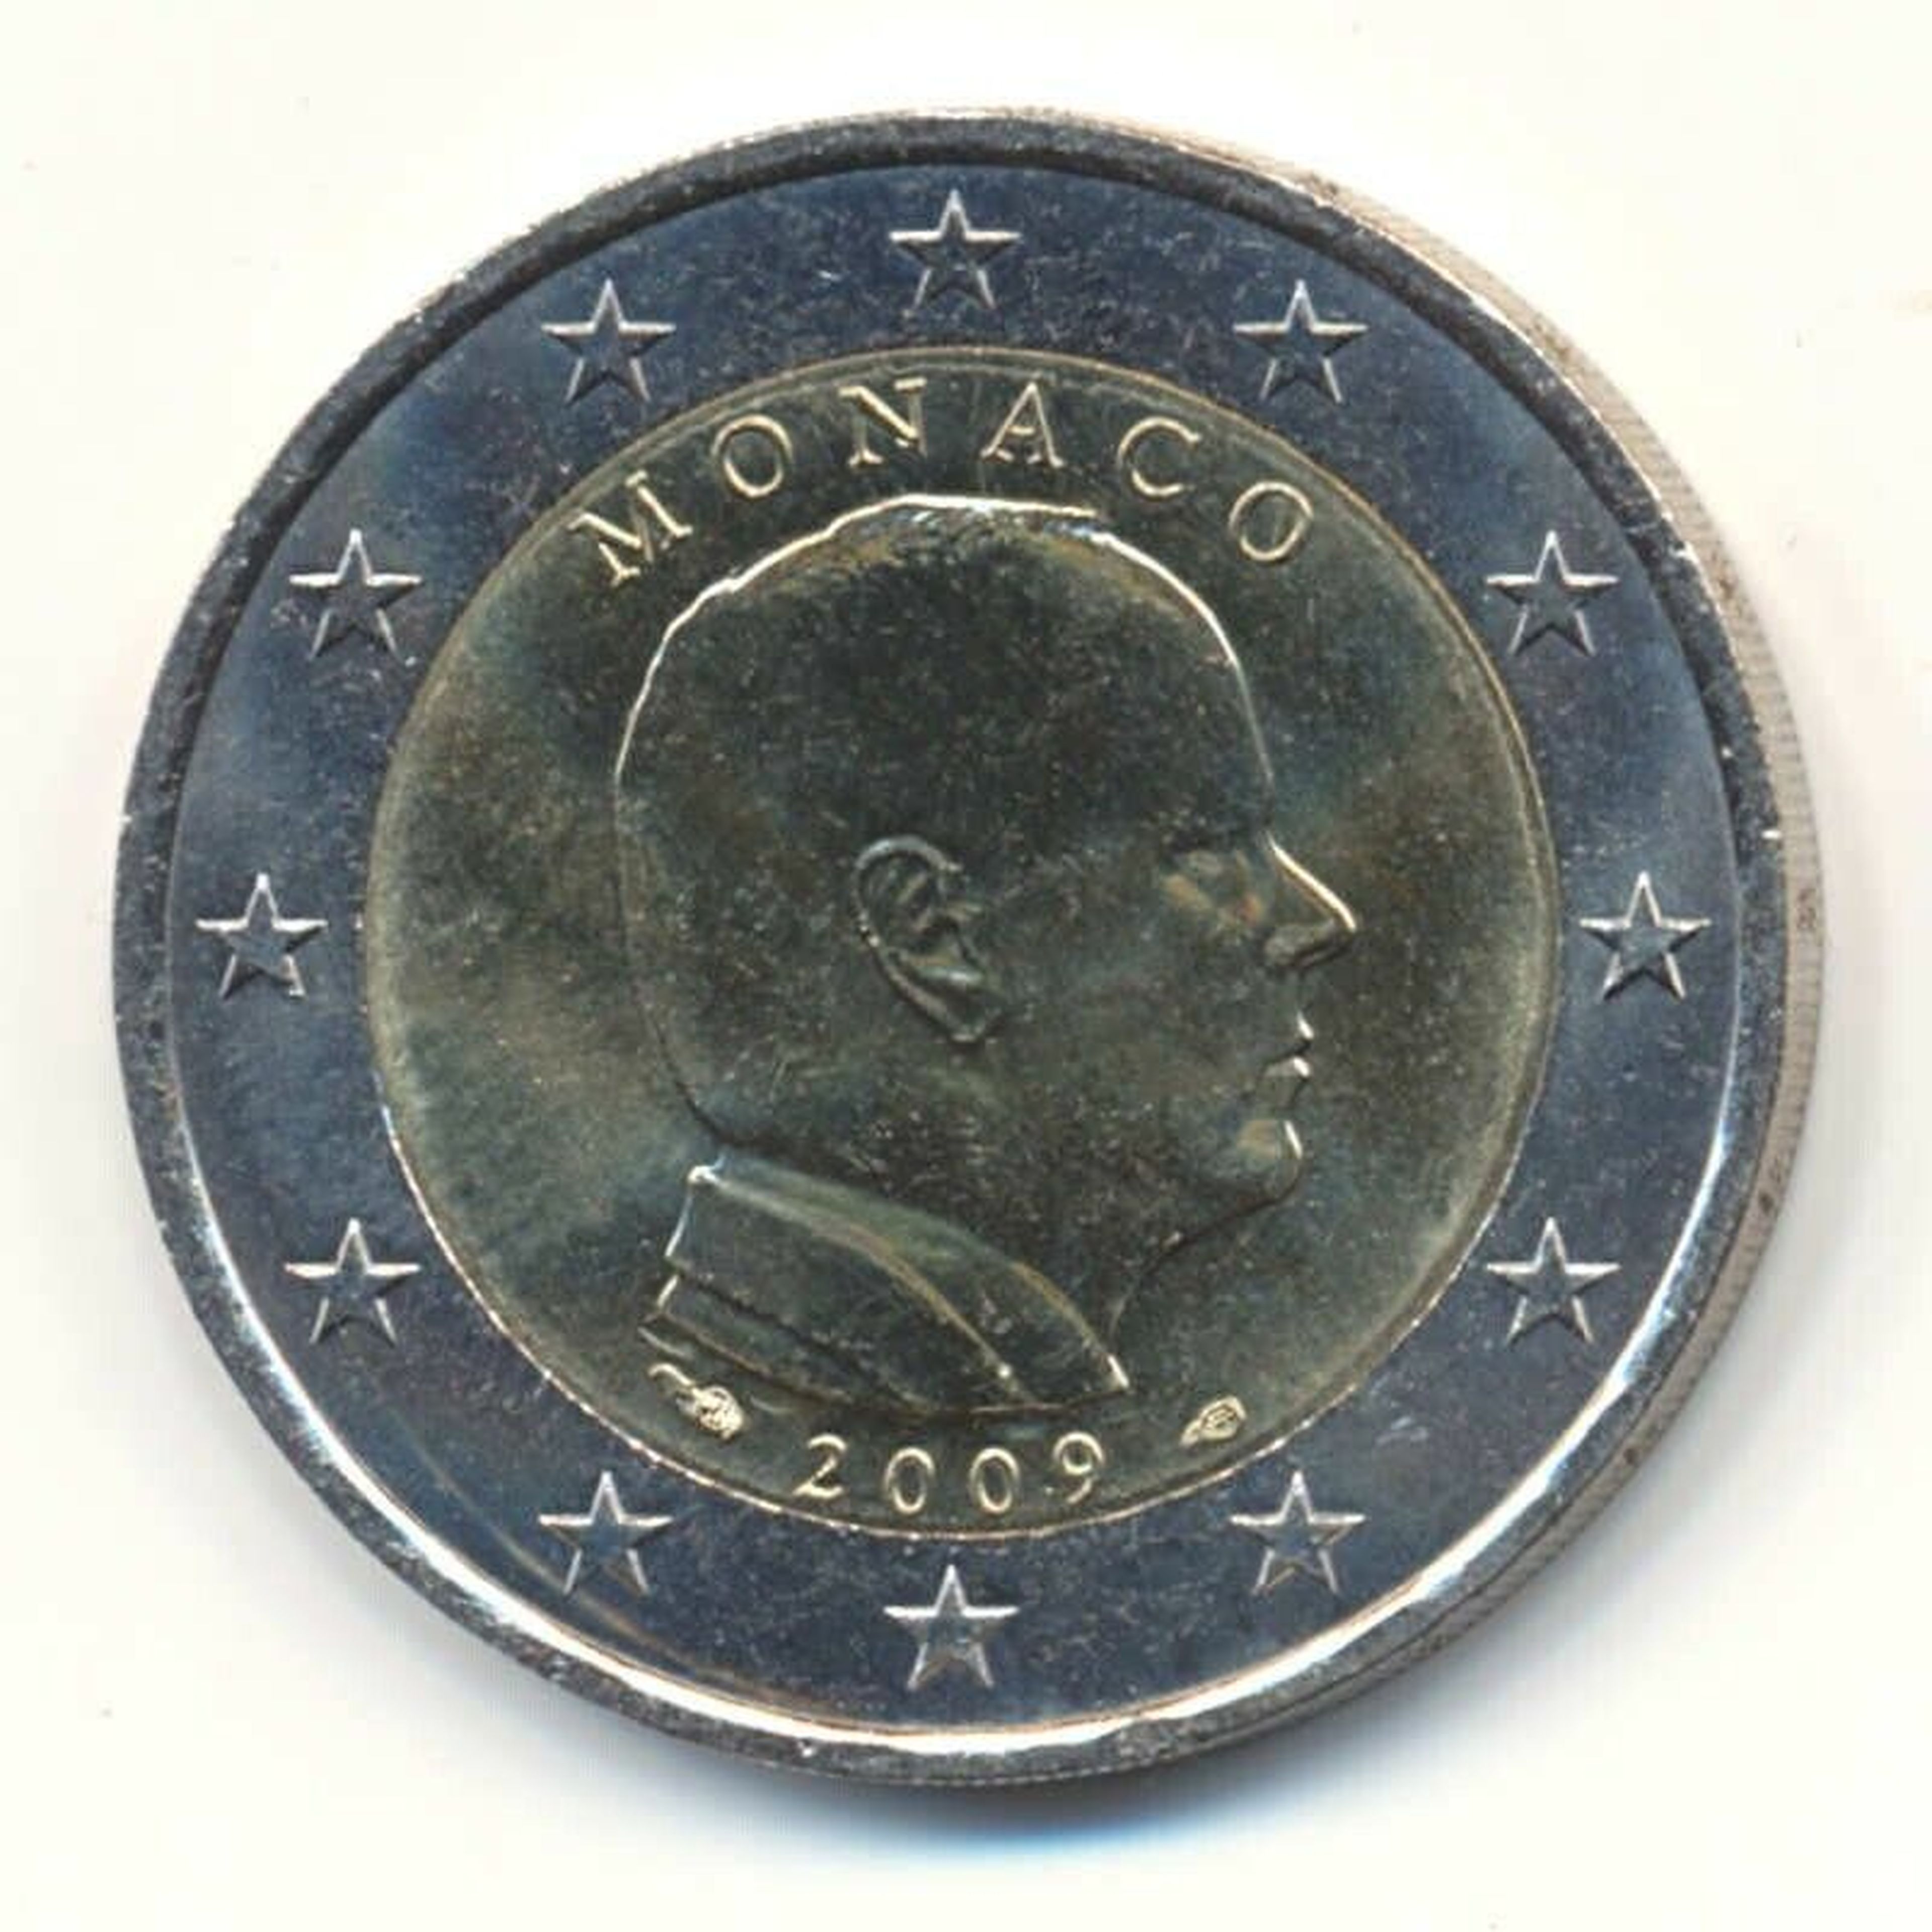 1 euro de Mónaco 2009